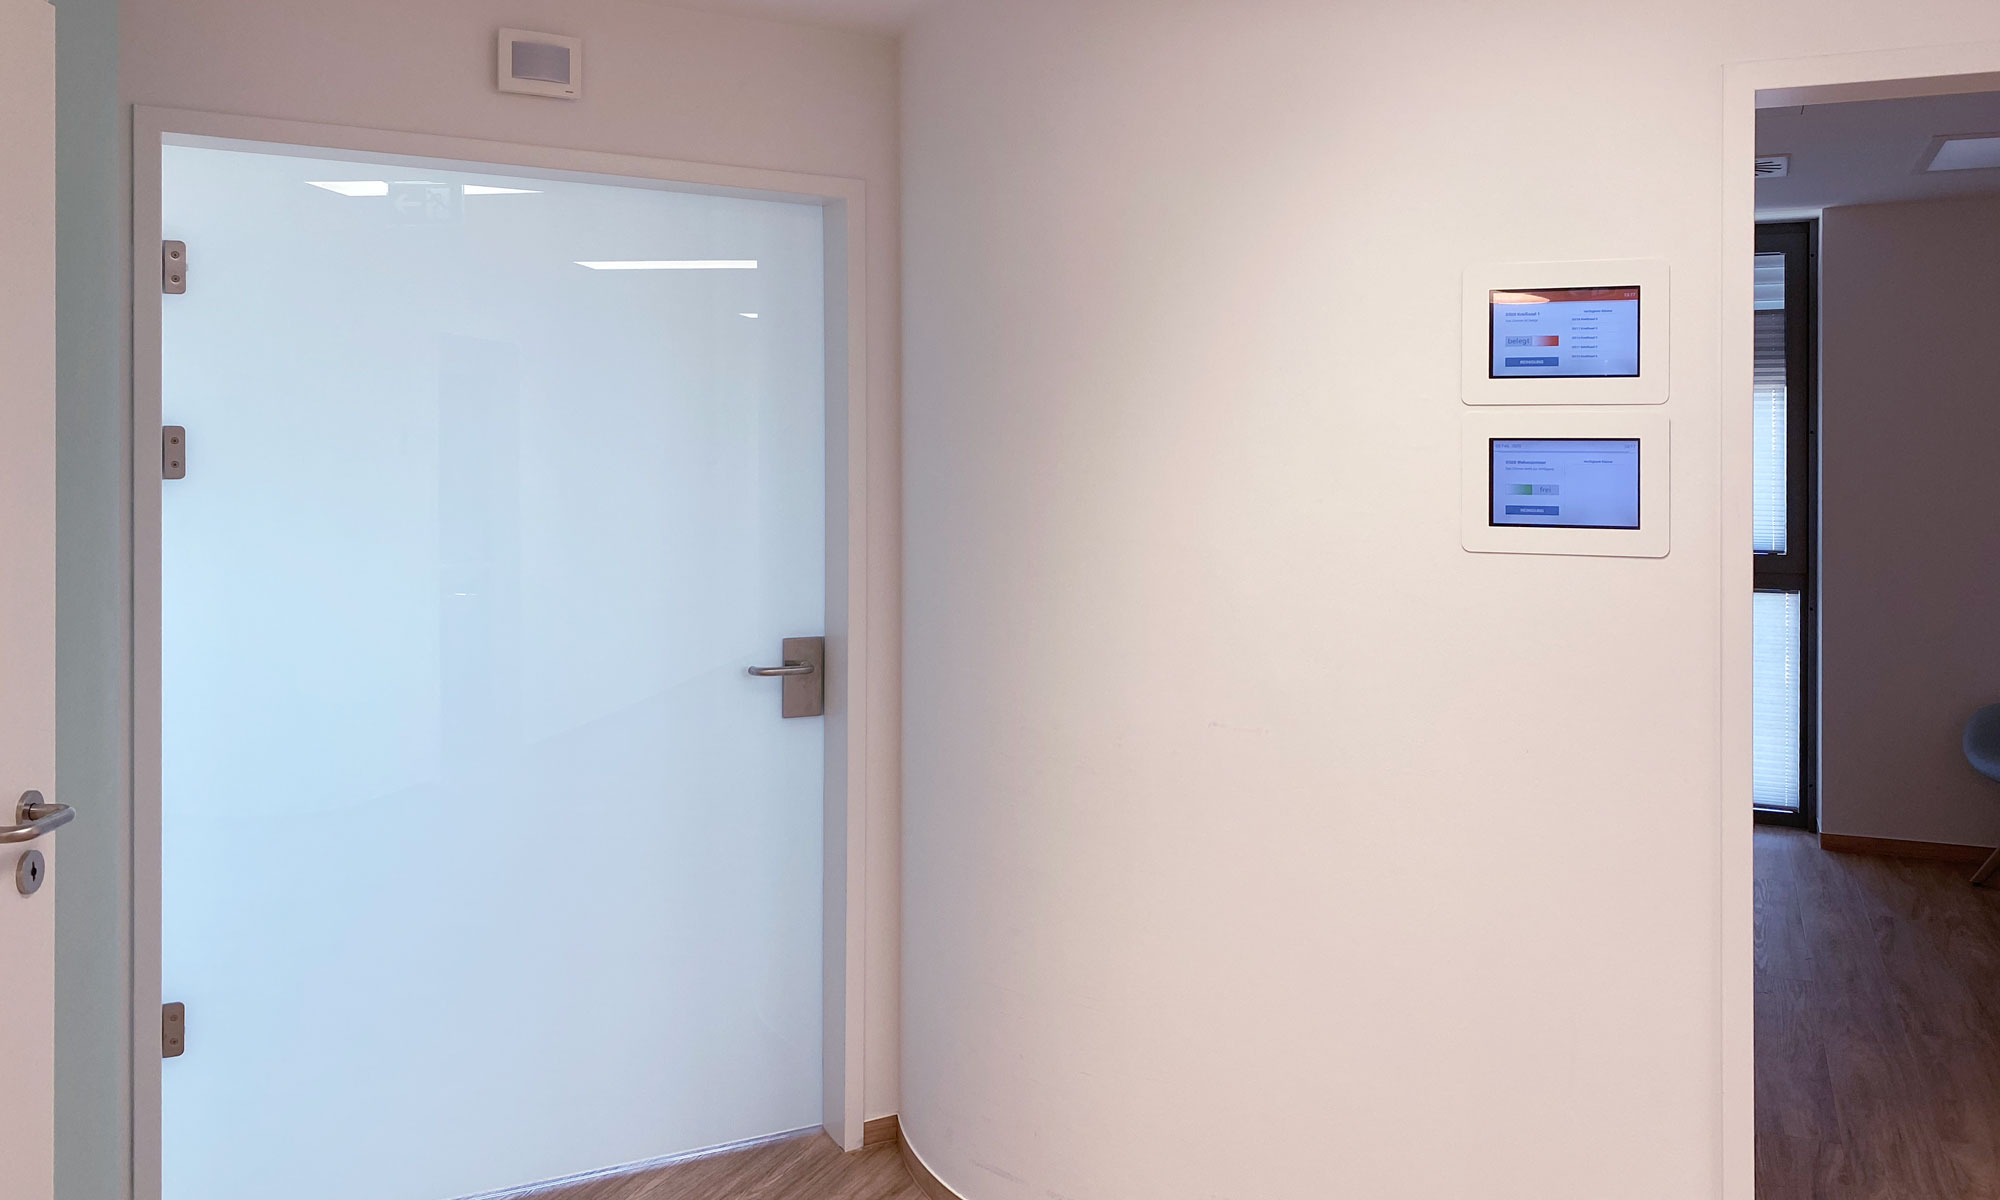 An einer Wand, bei einer Tür, hängen zwei Interaktive Türschilder